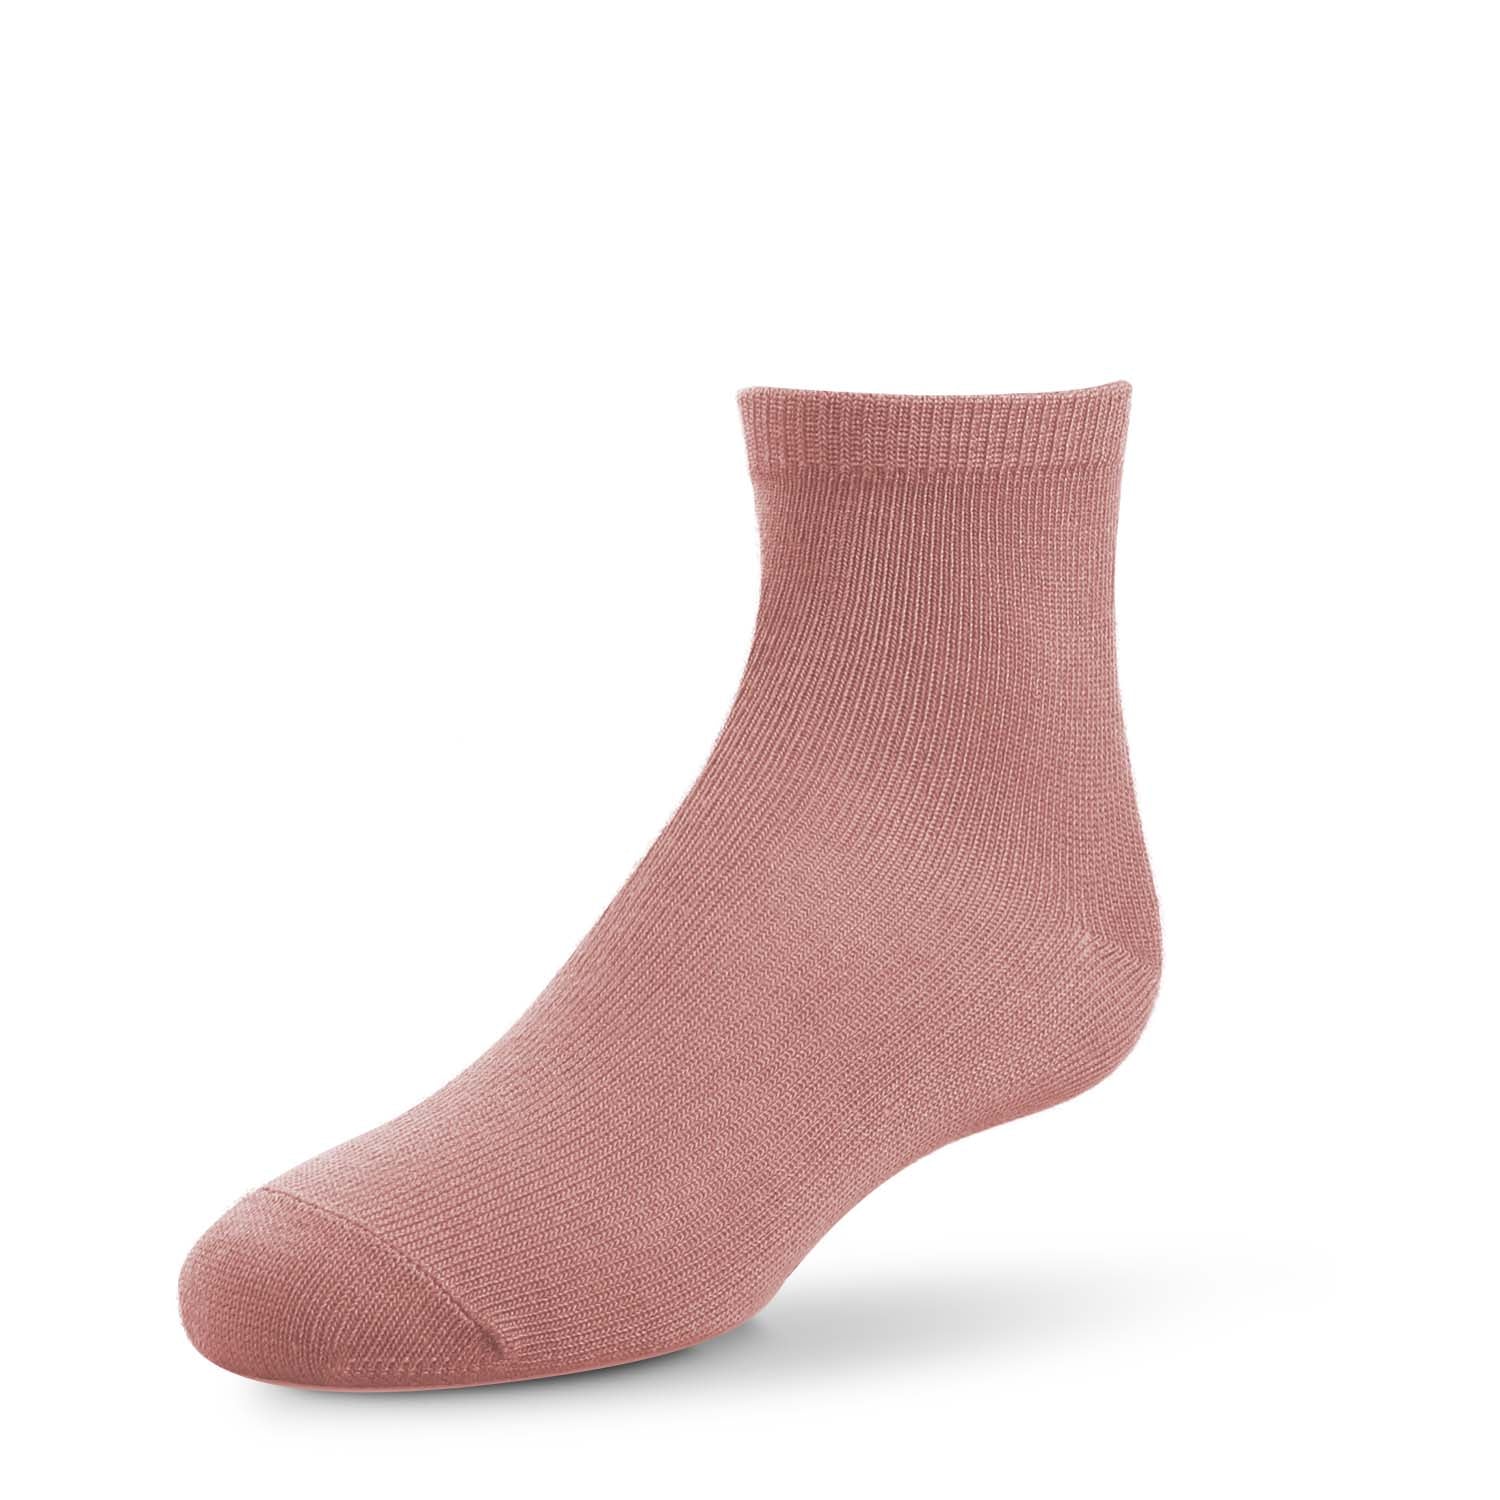  Falari 12 Pairs Women Ankle Socks Colorful ComfortSoft